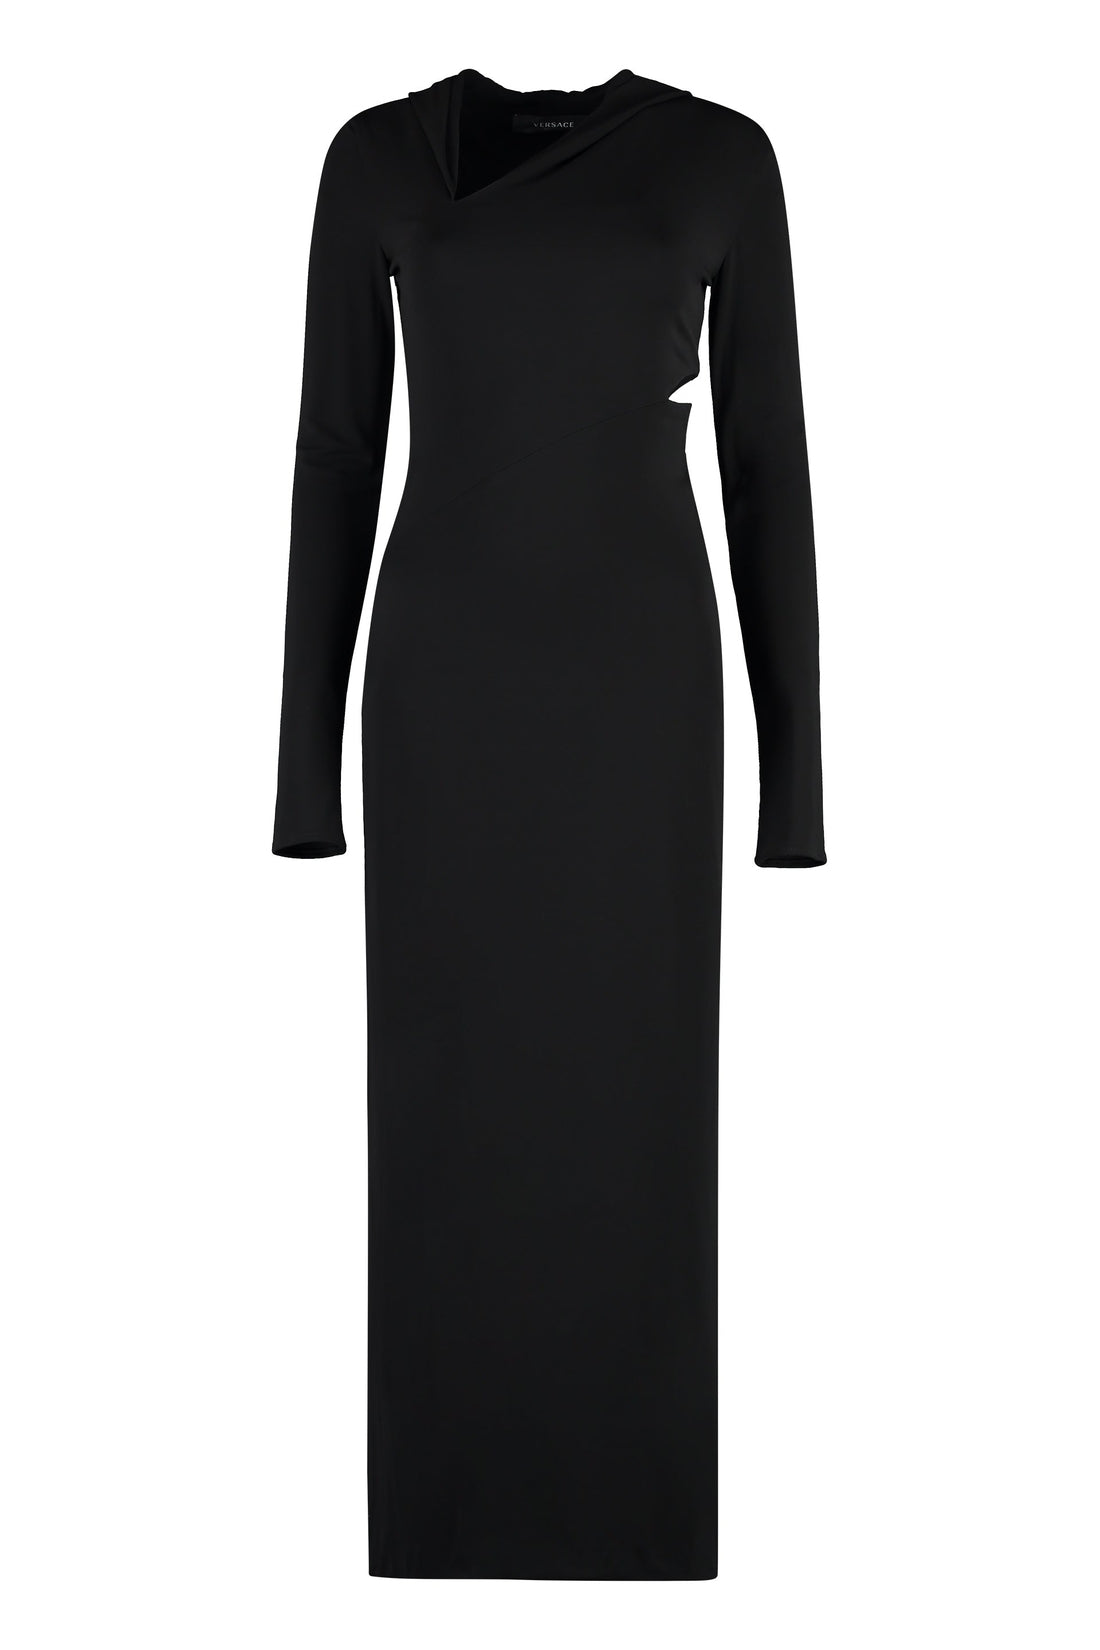 Versace-OUTLET-SALE-Jersey dress-ARCHIVIST